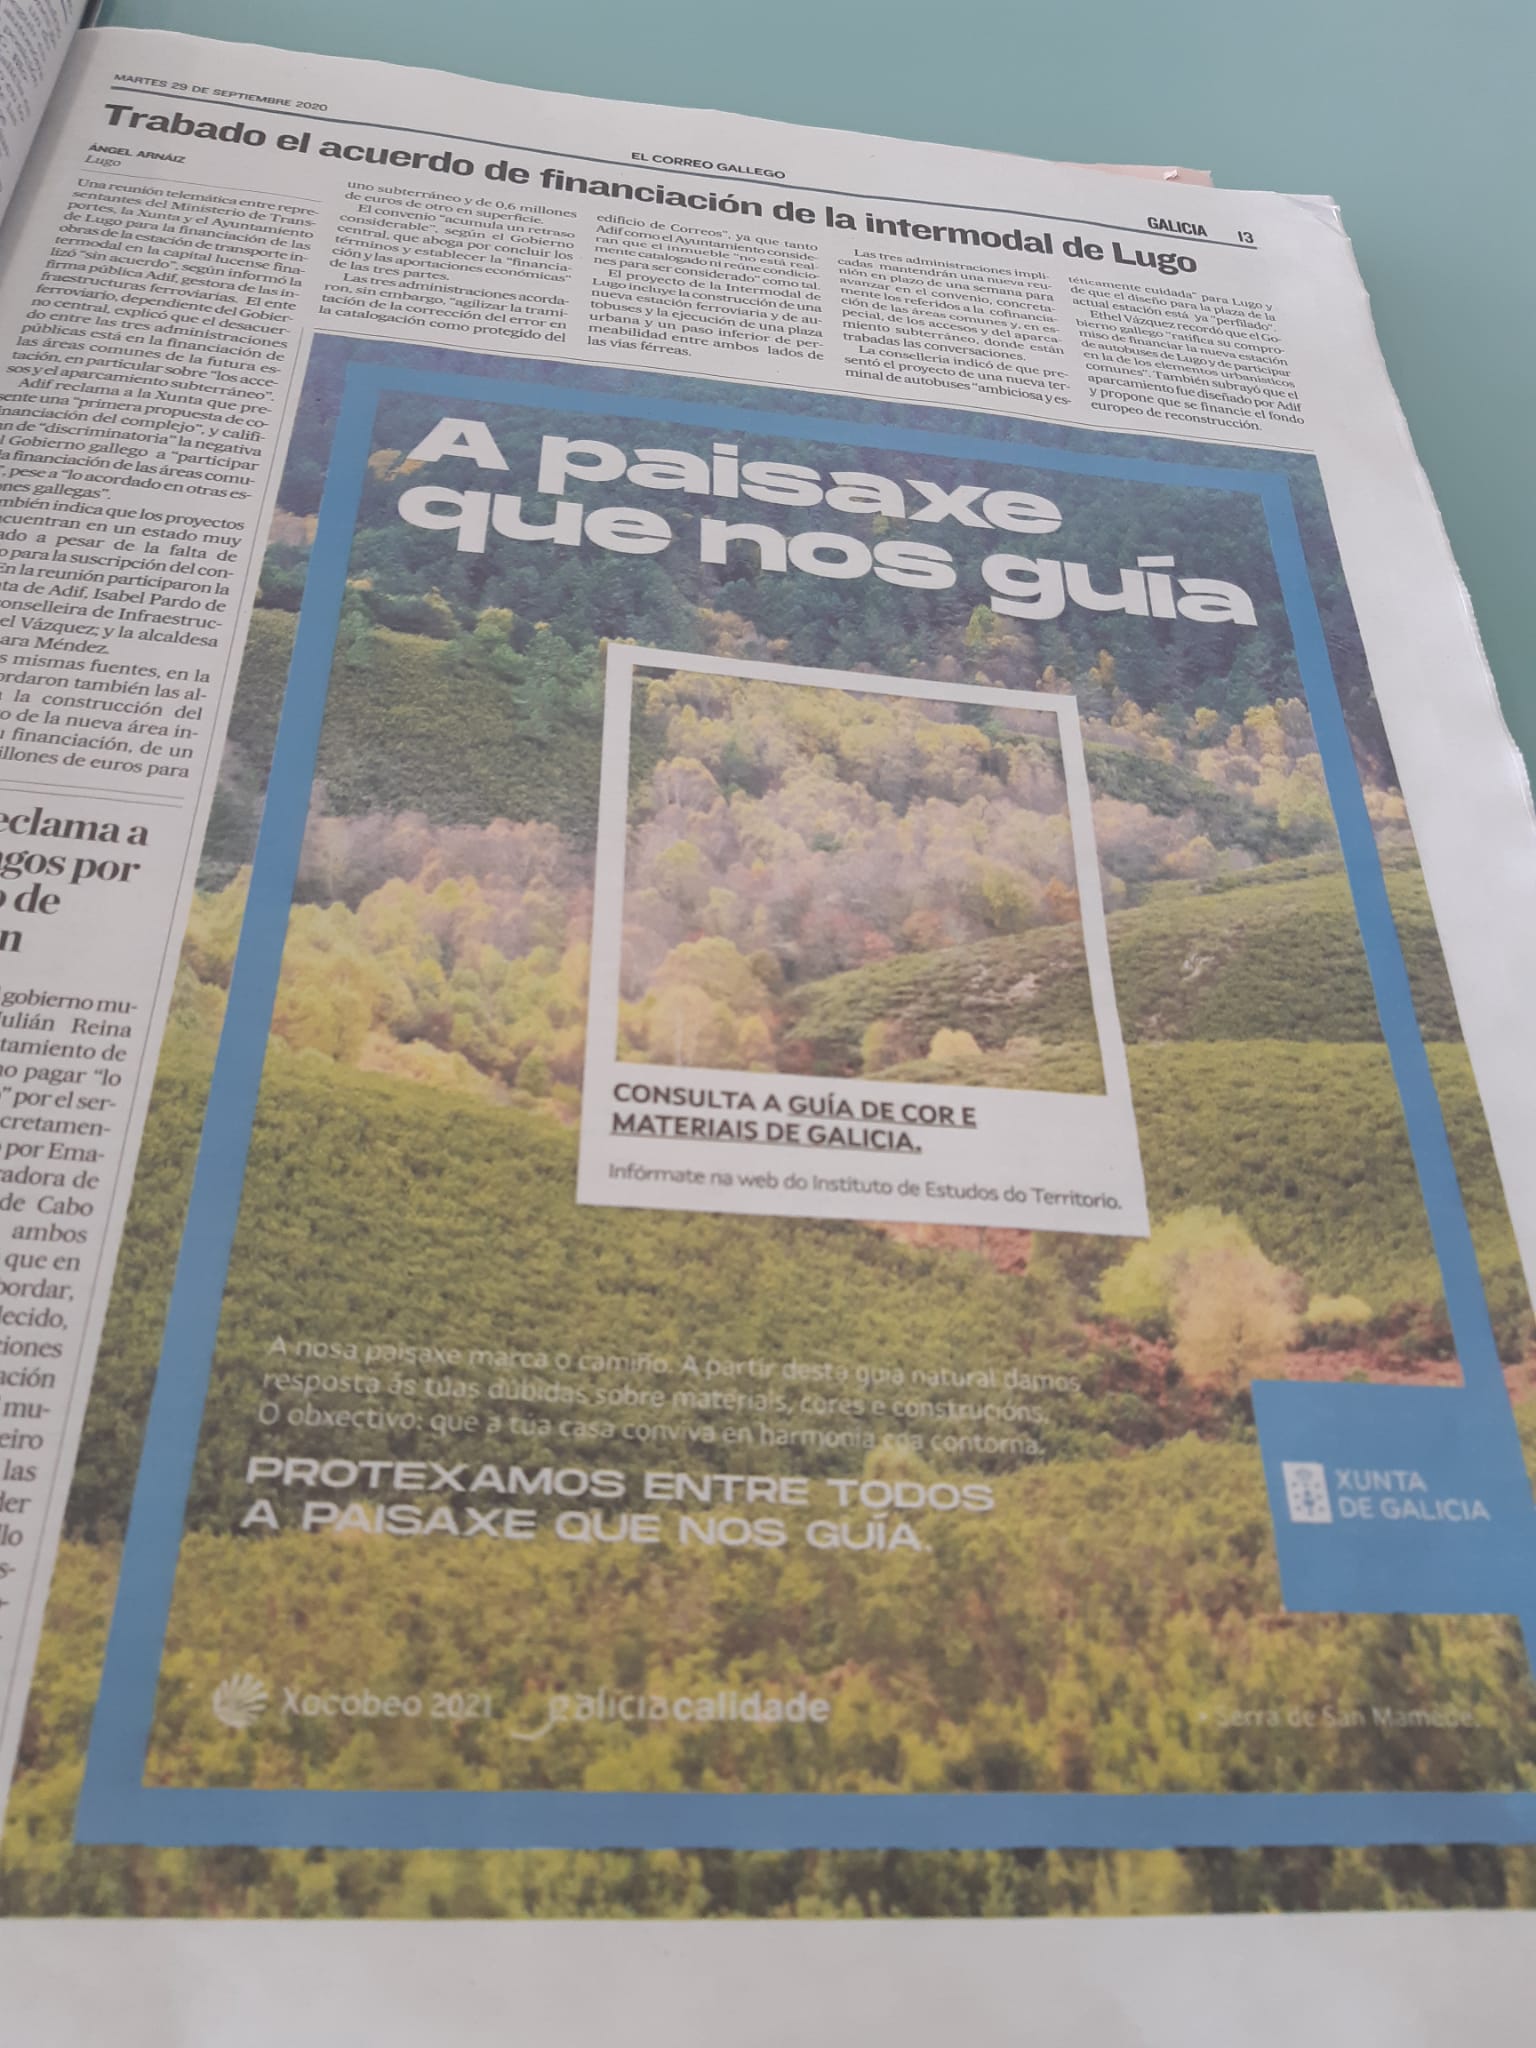 29 de Septiembre de 2020, medios impresos de Galicia disfrutan de  adjudicaciones de publicidad de María del Mar Sánchez Sierra con el eslogan  "A Paisaxe que nos guía", dinero retirado equivalente a; -